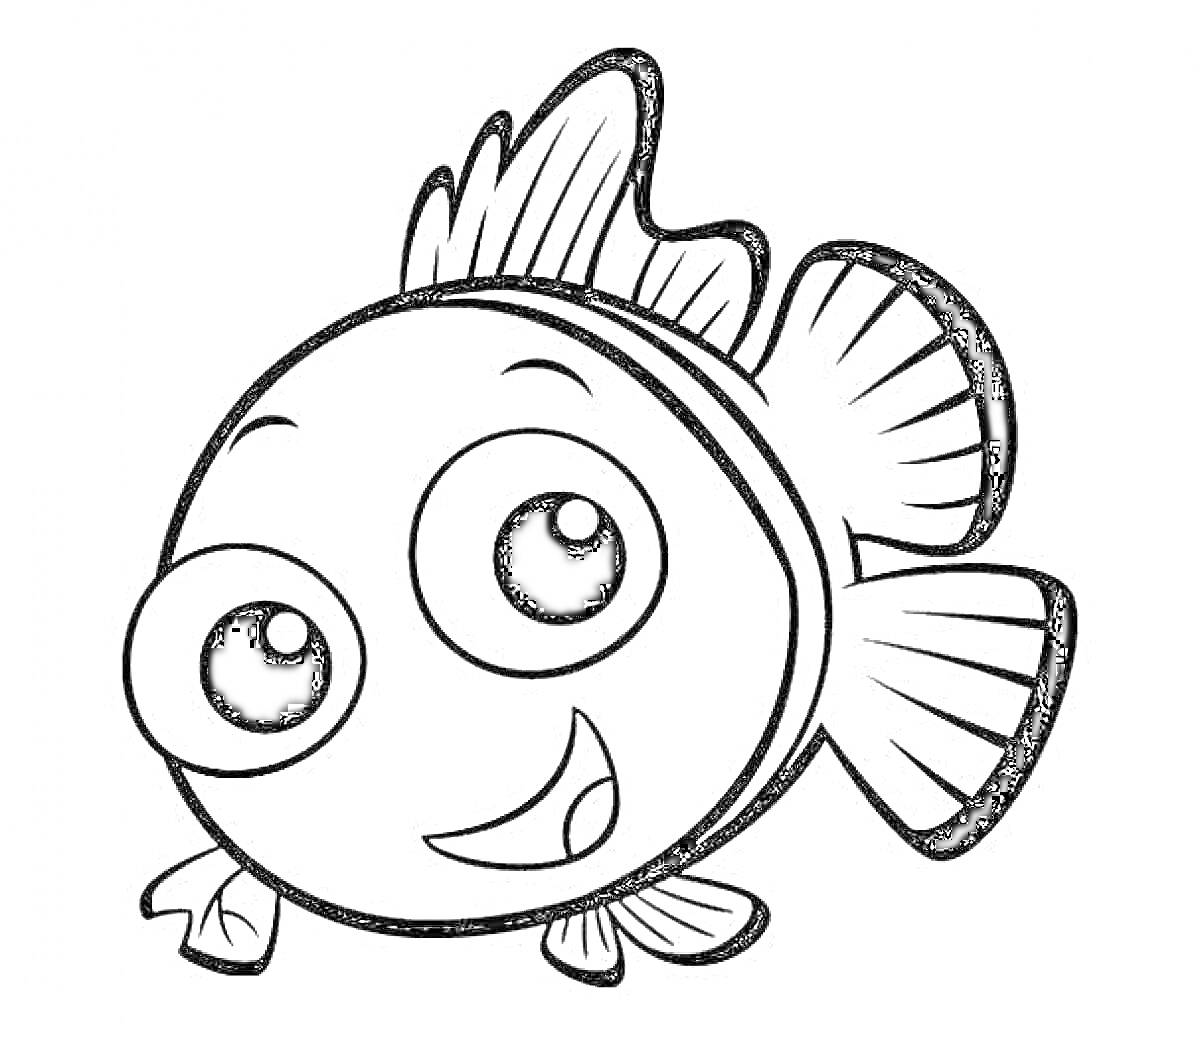 Веселая рыба-клоун с большими глазами и плавниками